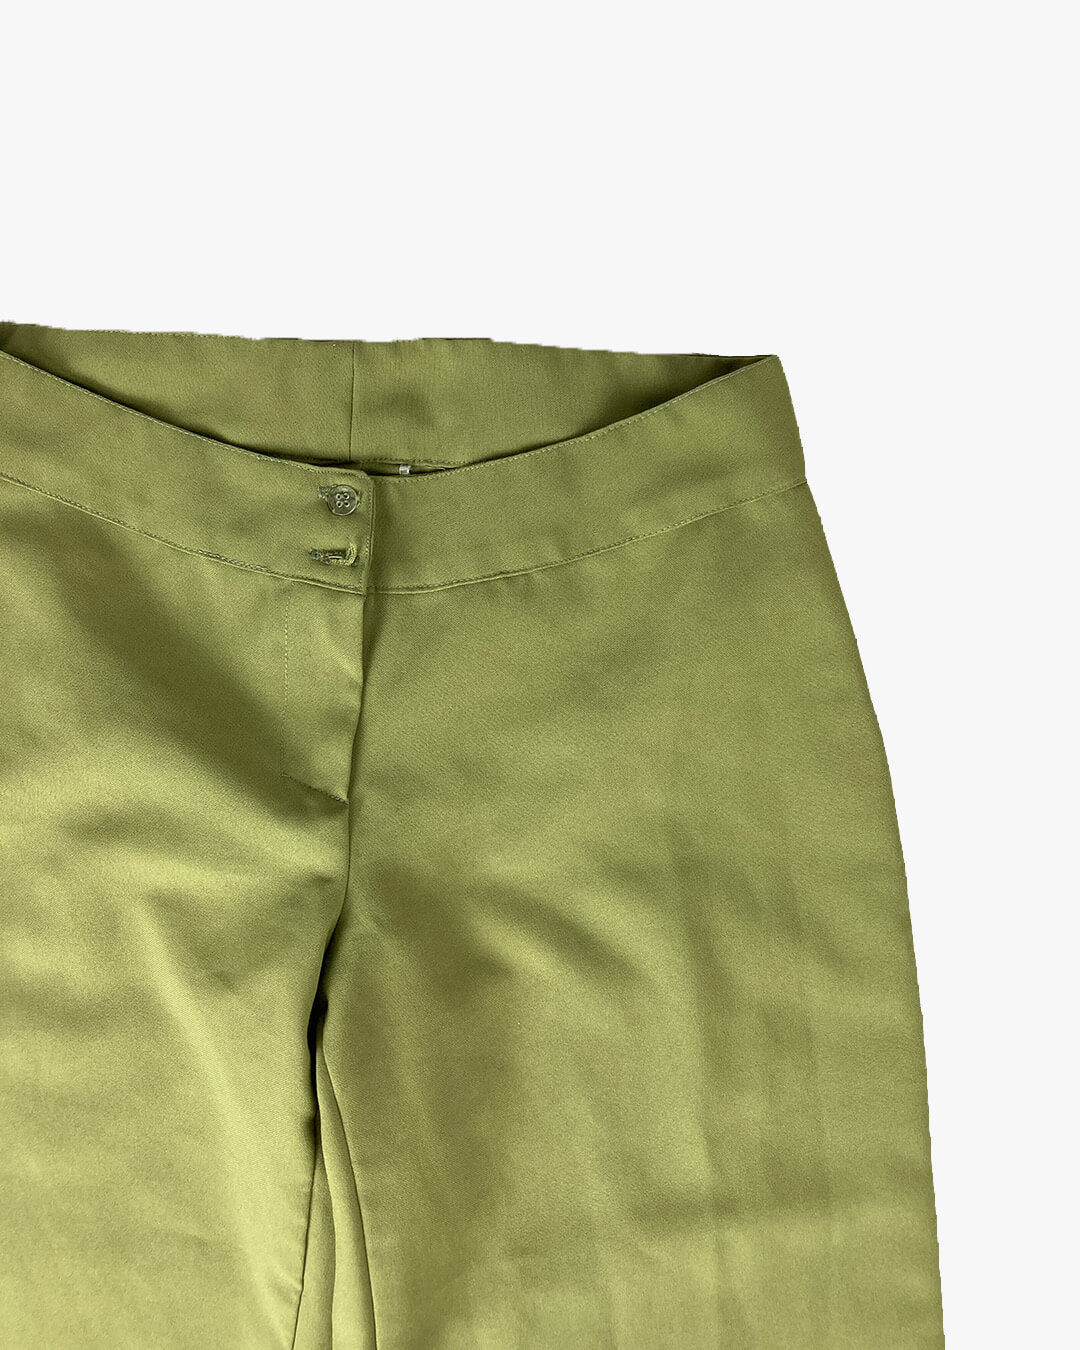 Pantalon fluide vert vintage